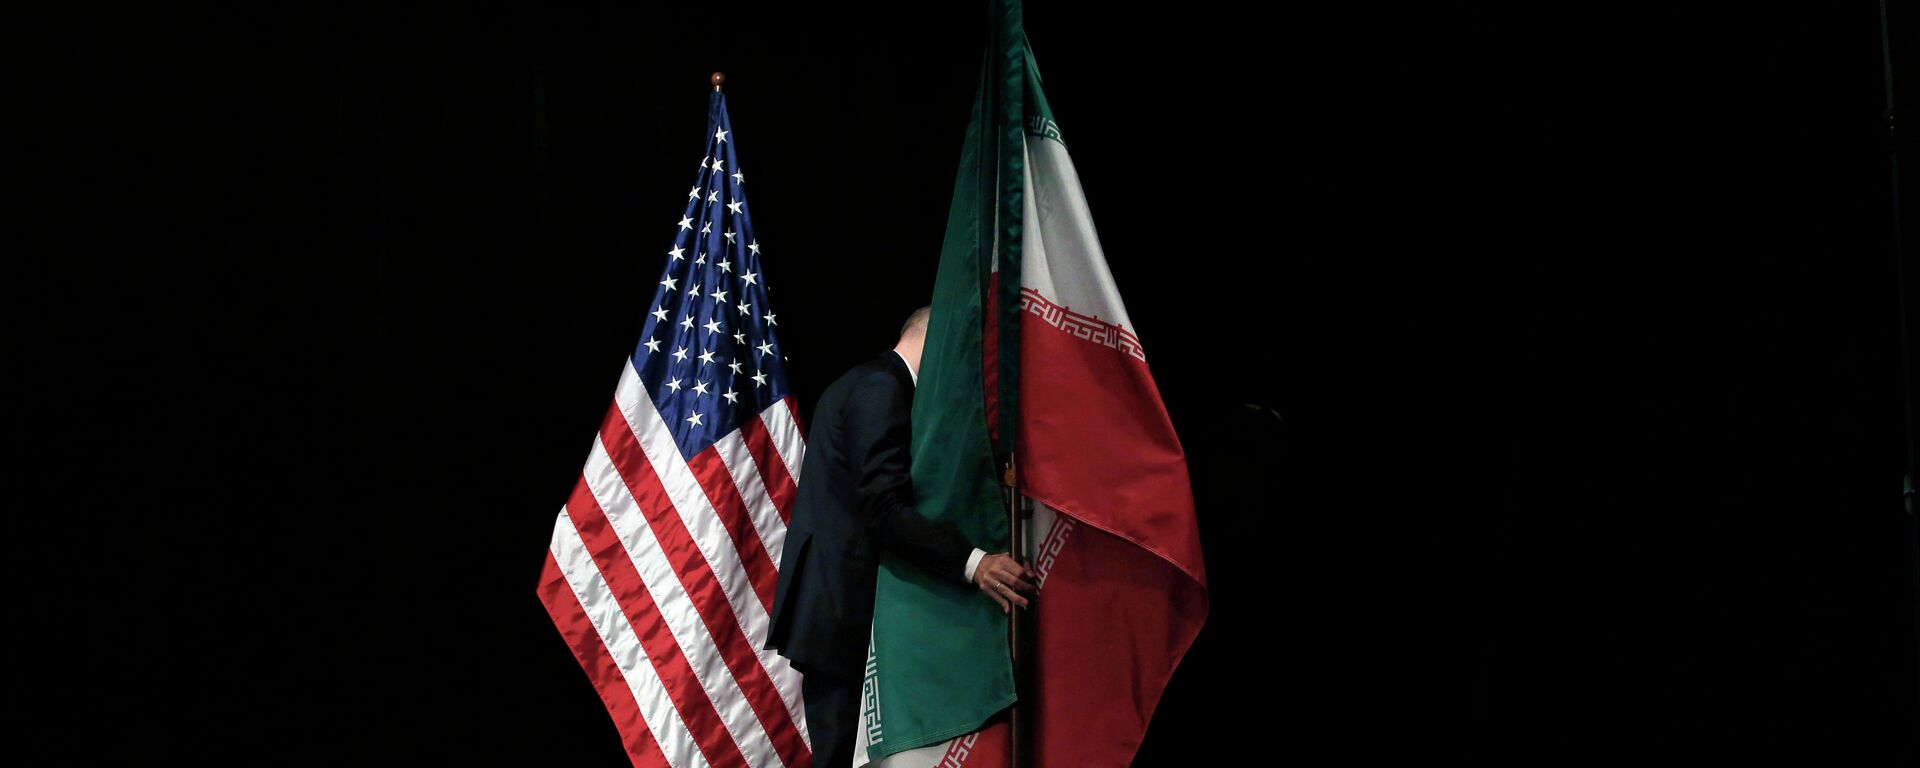 Banderas de EEUU e Irán - Sputnik Mundo, 1920, 18.02.2021